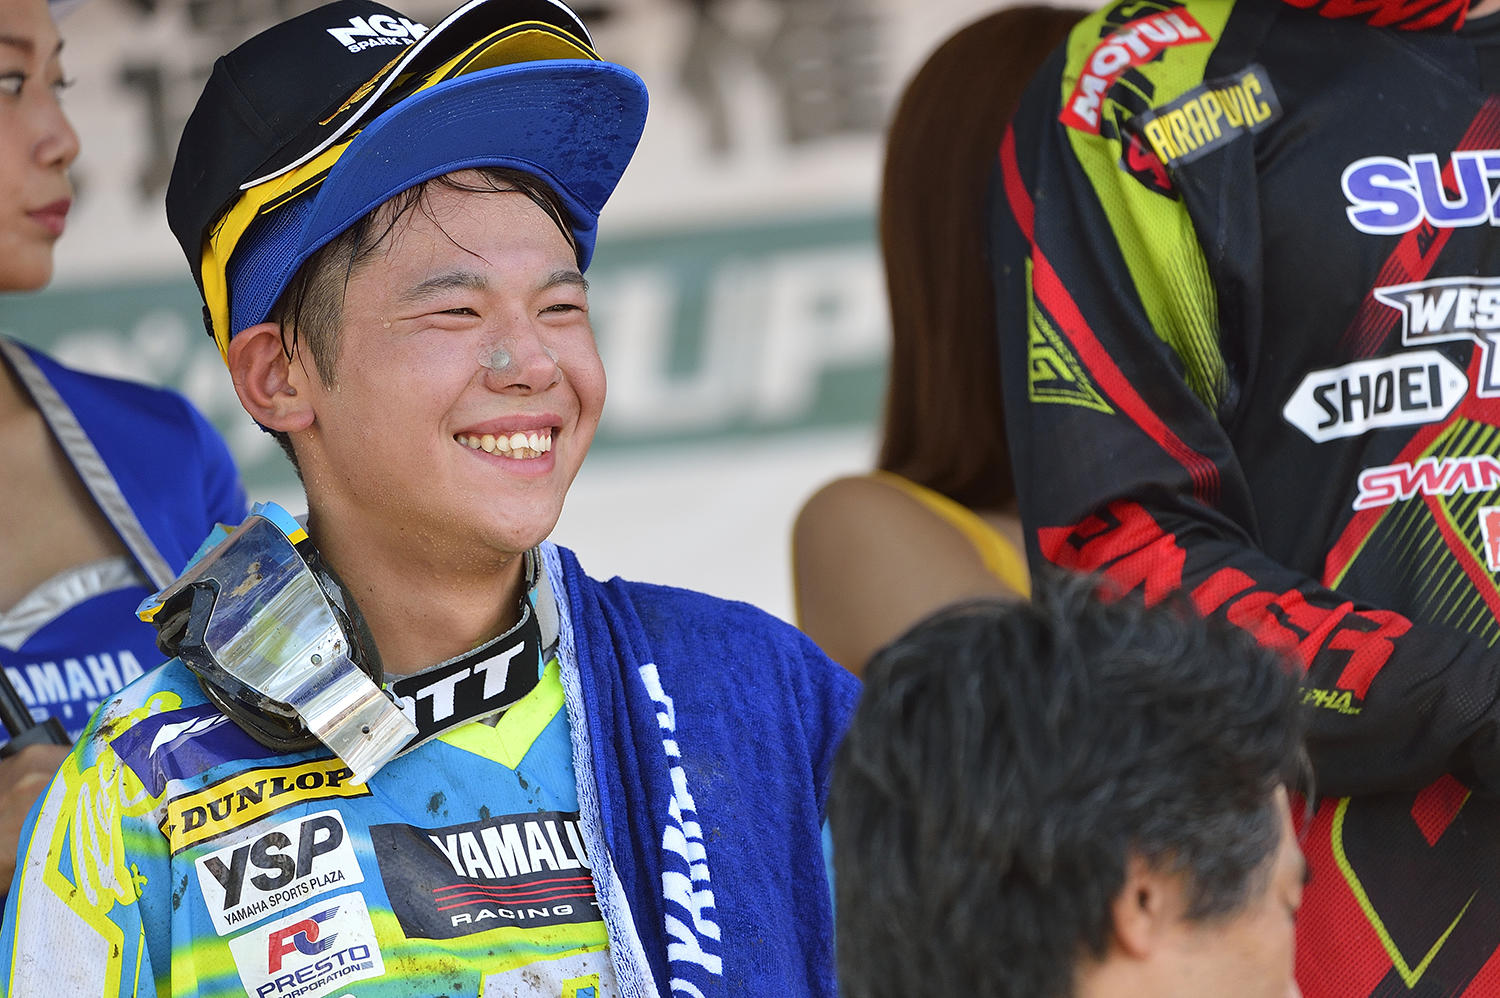 レース前の集中した表情と笑顔とのギャップから、バイクのハンドルを握った途端、人が変わったようだと言われる『こち亀』の本田さんに似ていると言われるのかもしれませんね〜